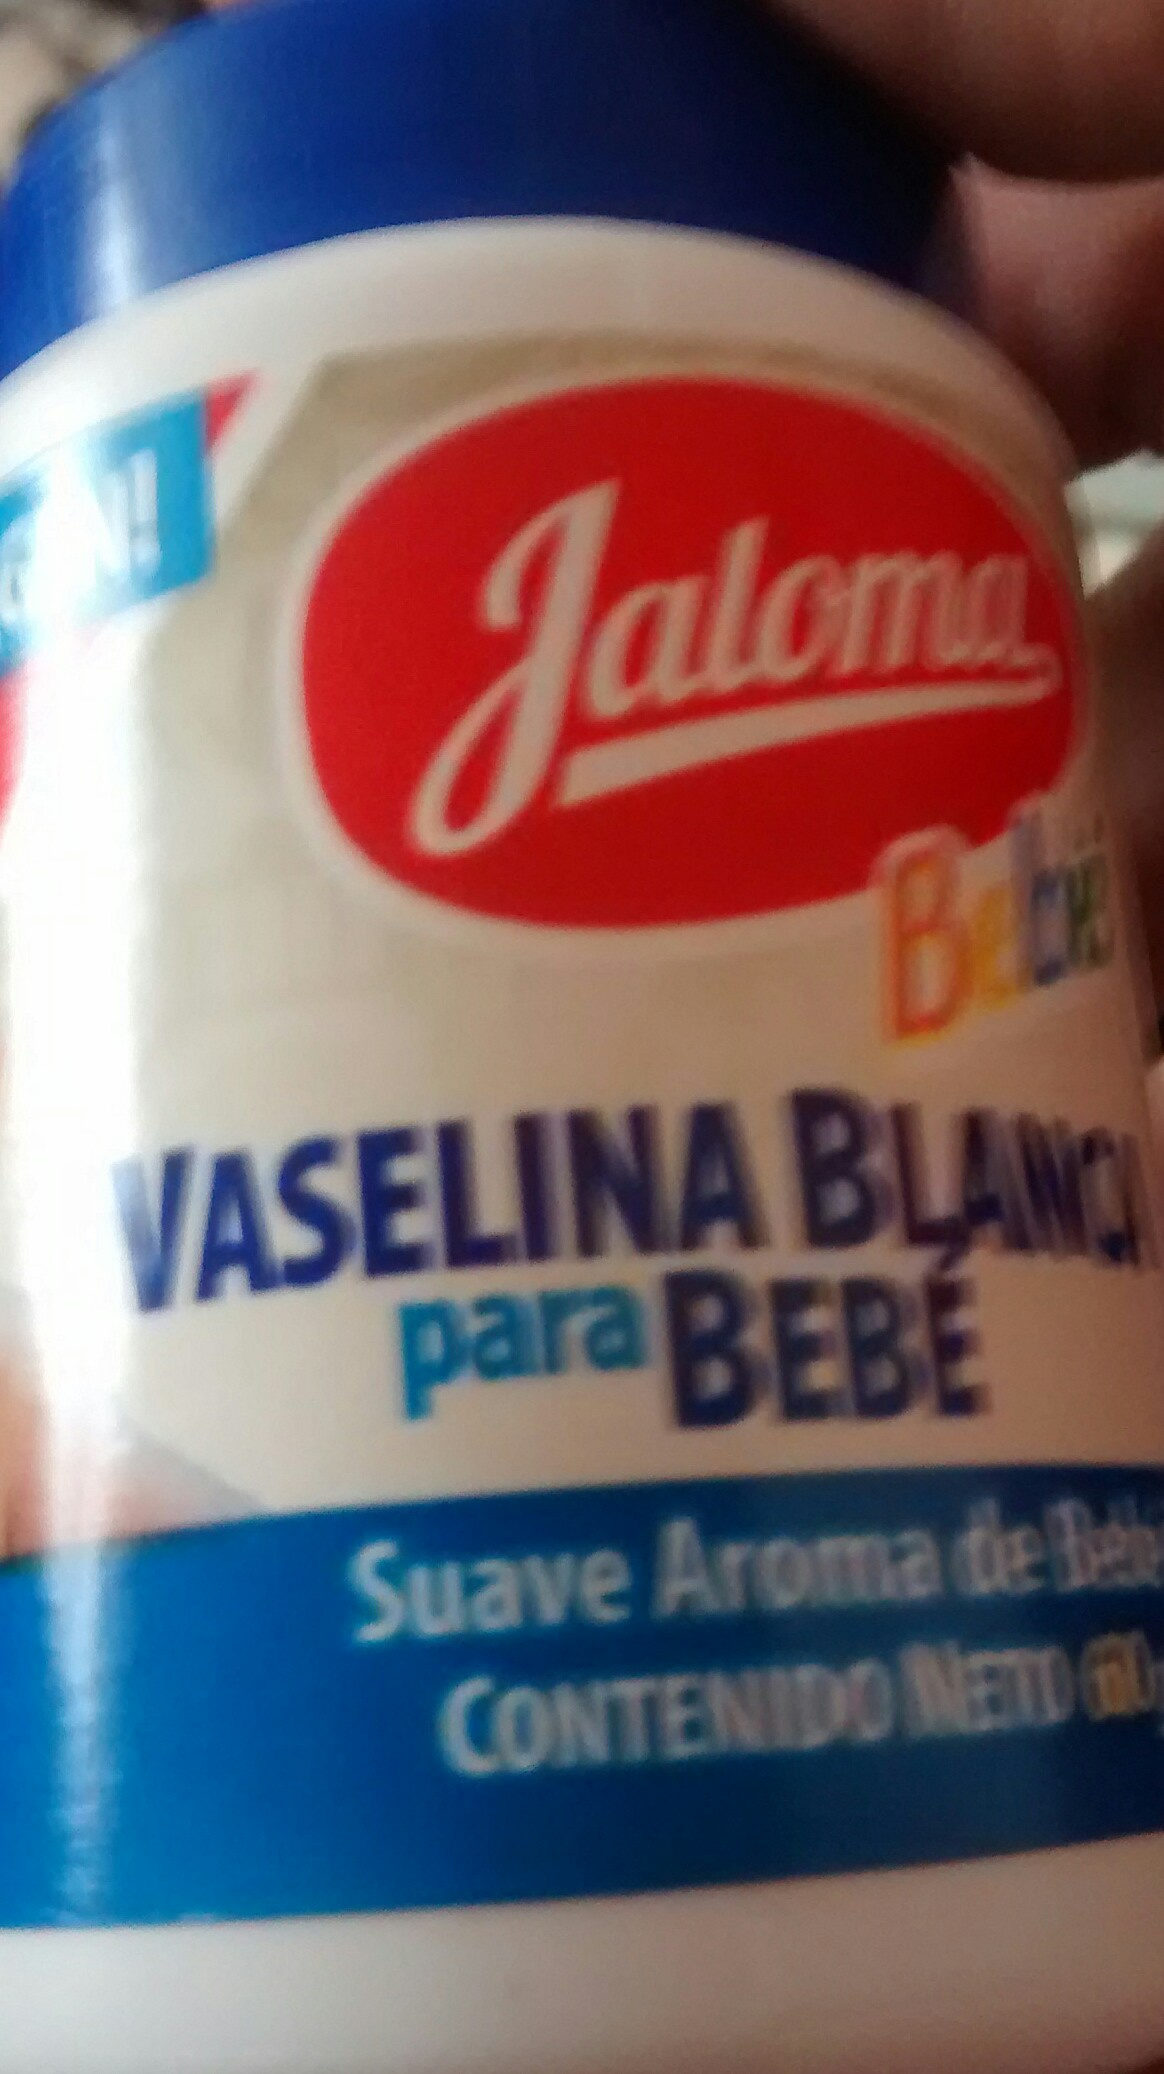 vaselina blanca para bebe - Ingredients - es